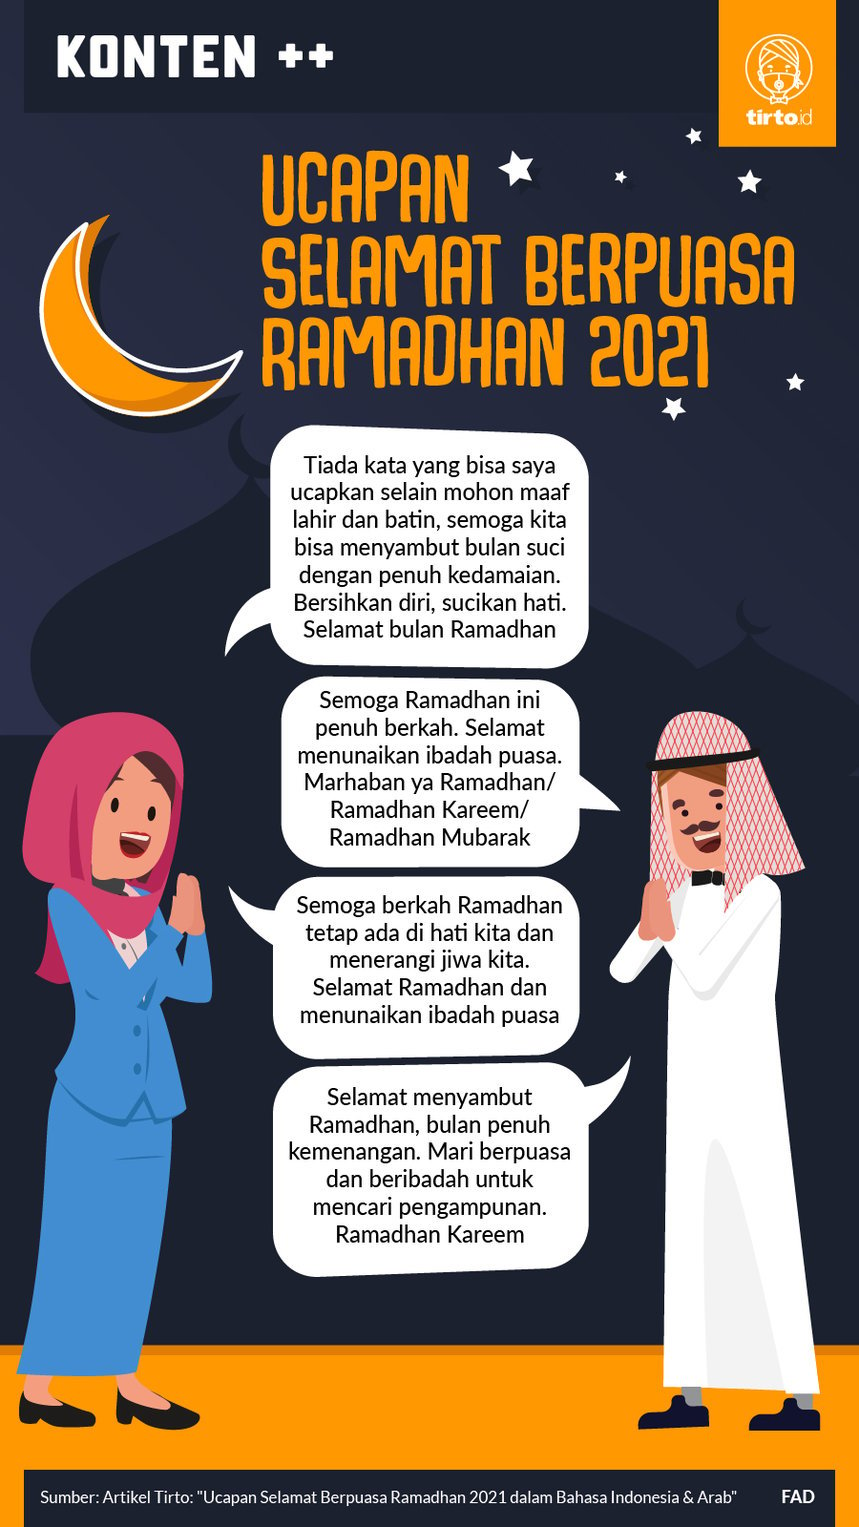 Ucapan ramadhan